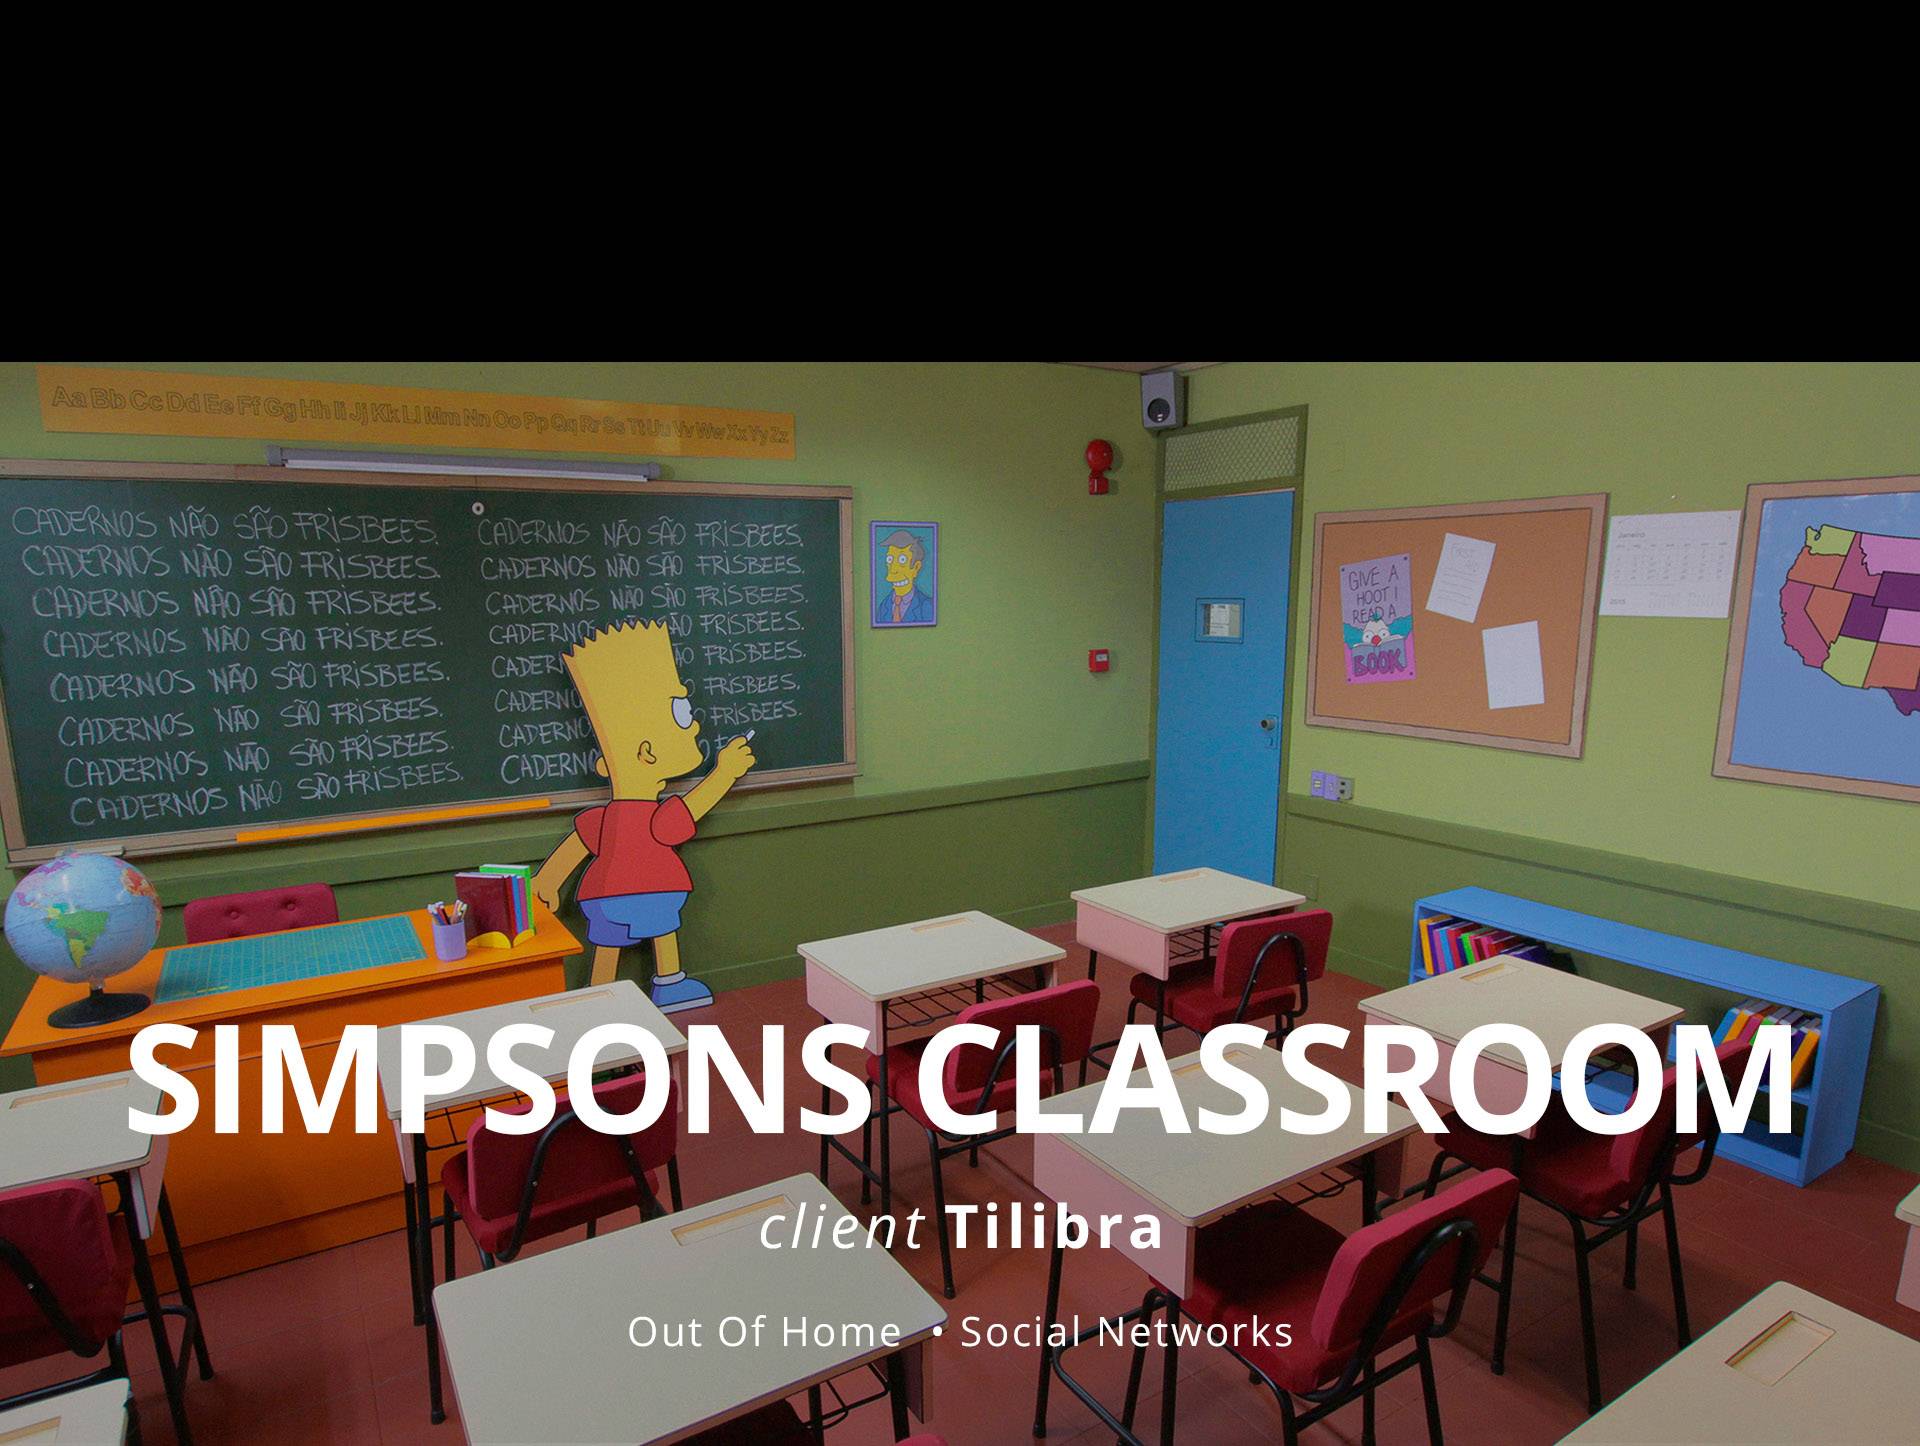 SimpsonsClassroom_HeaderMobile_01